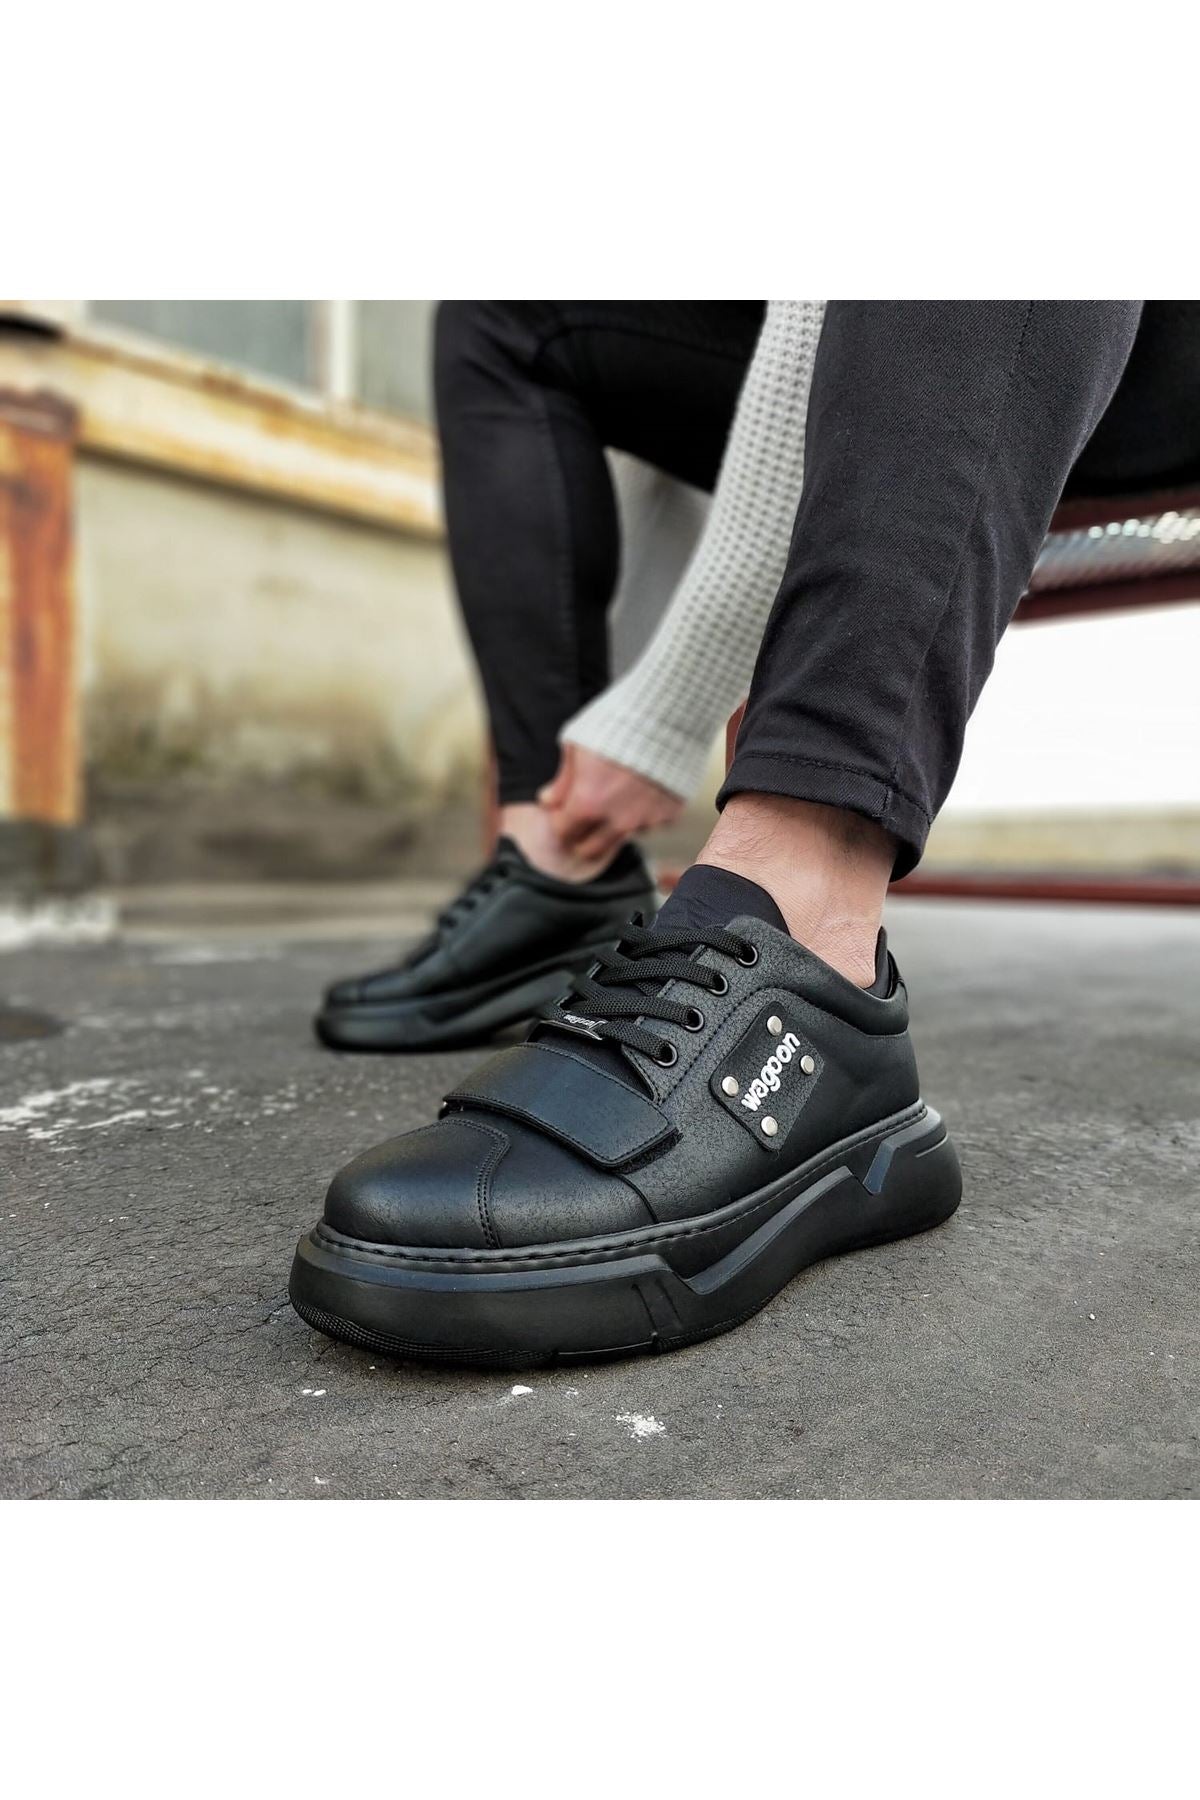 Original Design WG018 Coal Mens High Sole Shoes - STREETMODE ™